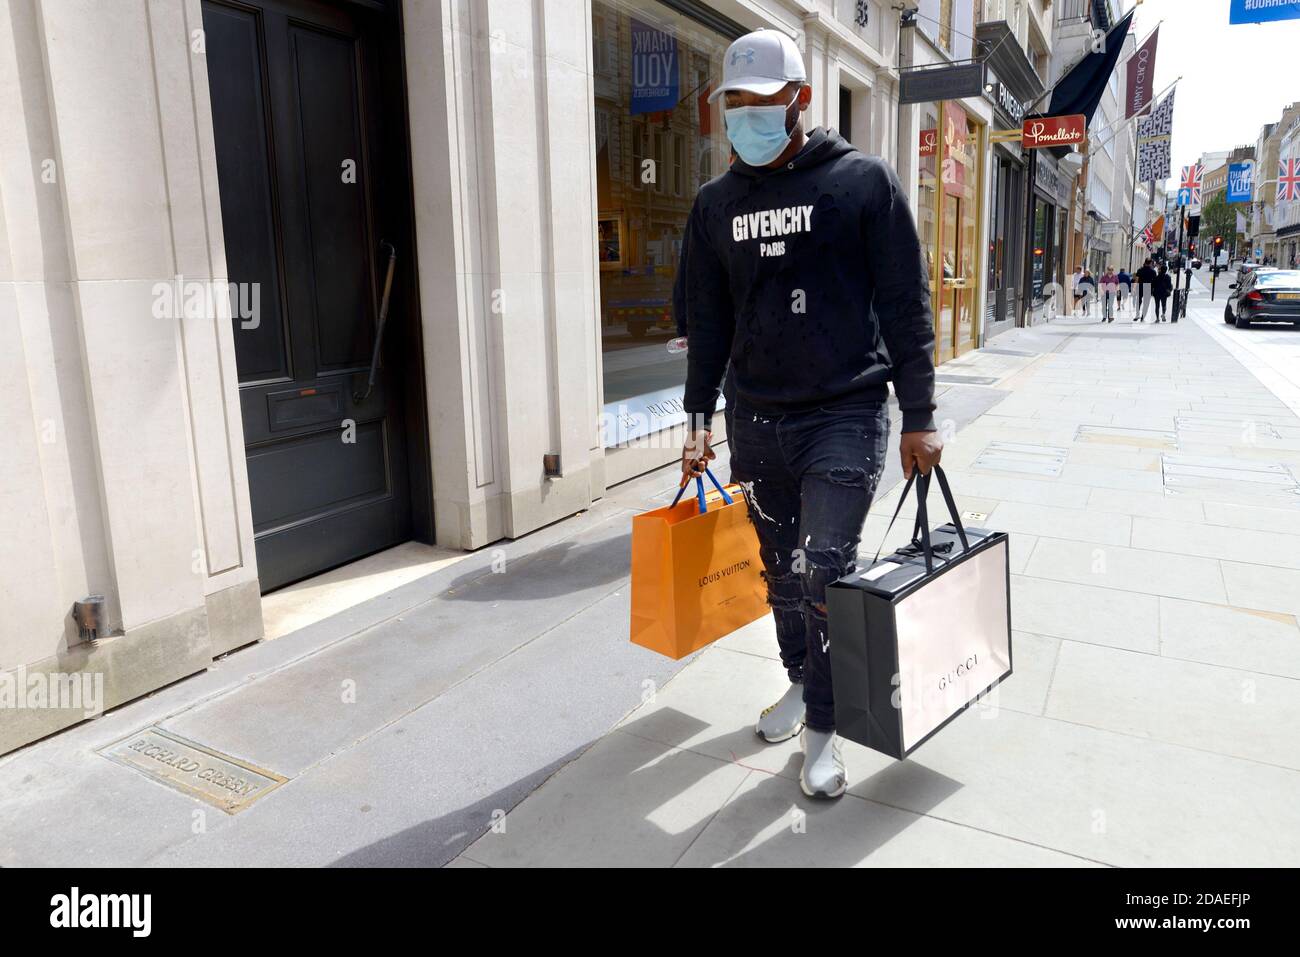 Londra, Inghilterra, Regno Unito. Shopping nel West End durante la pandemia COVID, agosto 2020. Uomo che indossa jeans strappati e lacerati con etichetta di design Foto Stock